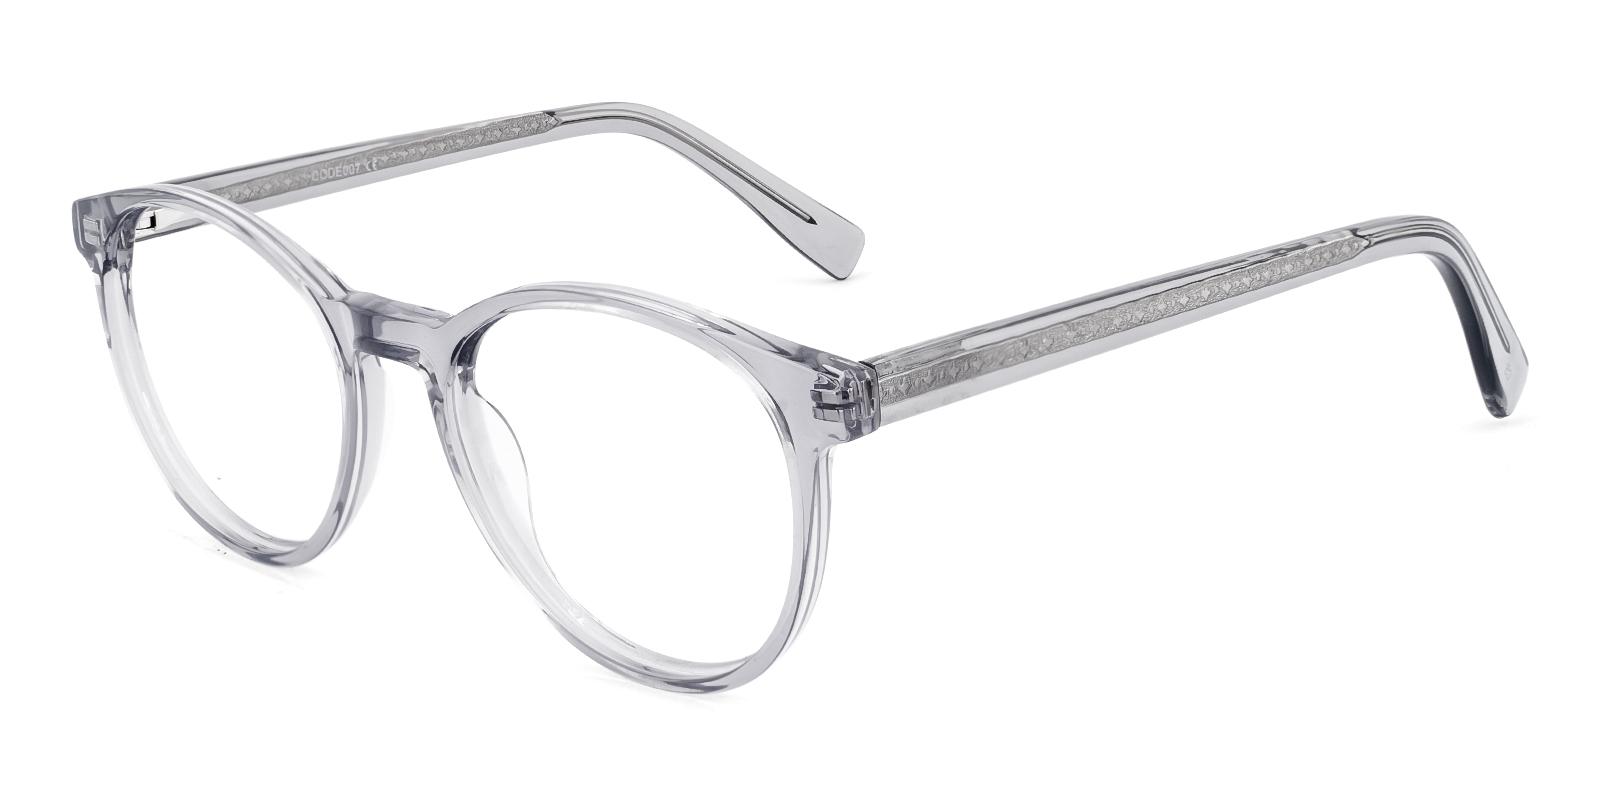 Oron Gray Acetate Eyeglasses , SpringHinges , UniversalBridgeFit Frames from ABBE Glasses